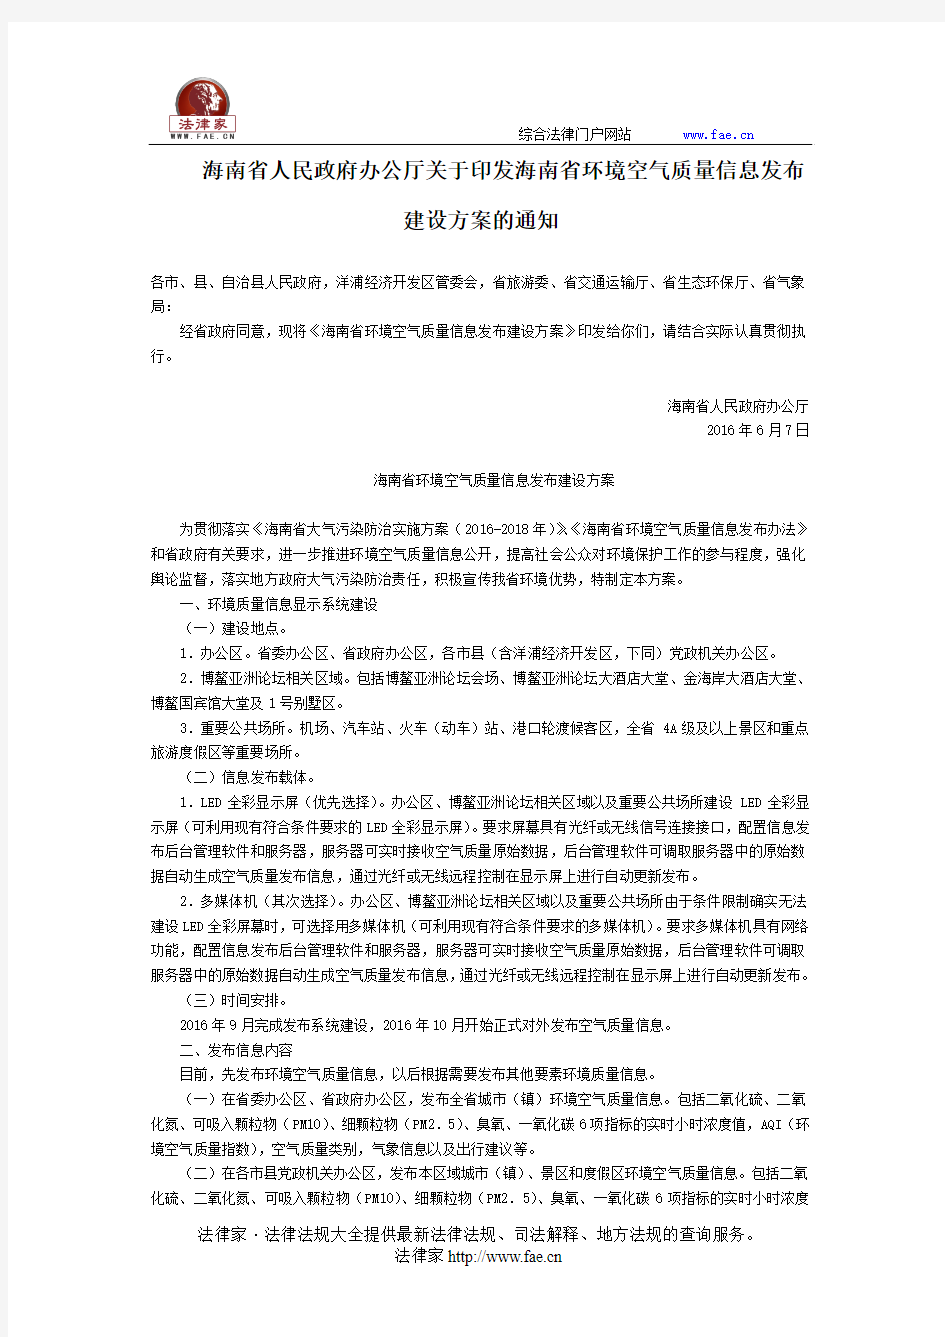 海南省人民政府办公厅关于印发海南省环境空气质量信息发布建设方案的通知-地方规范性文件